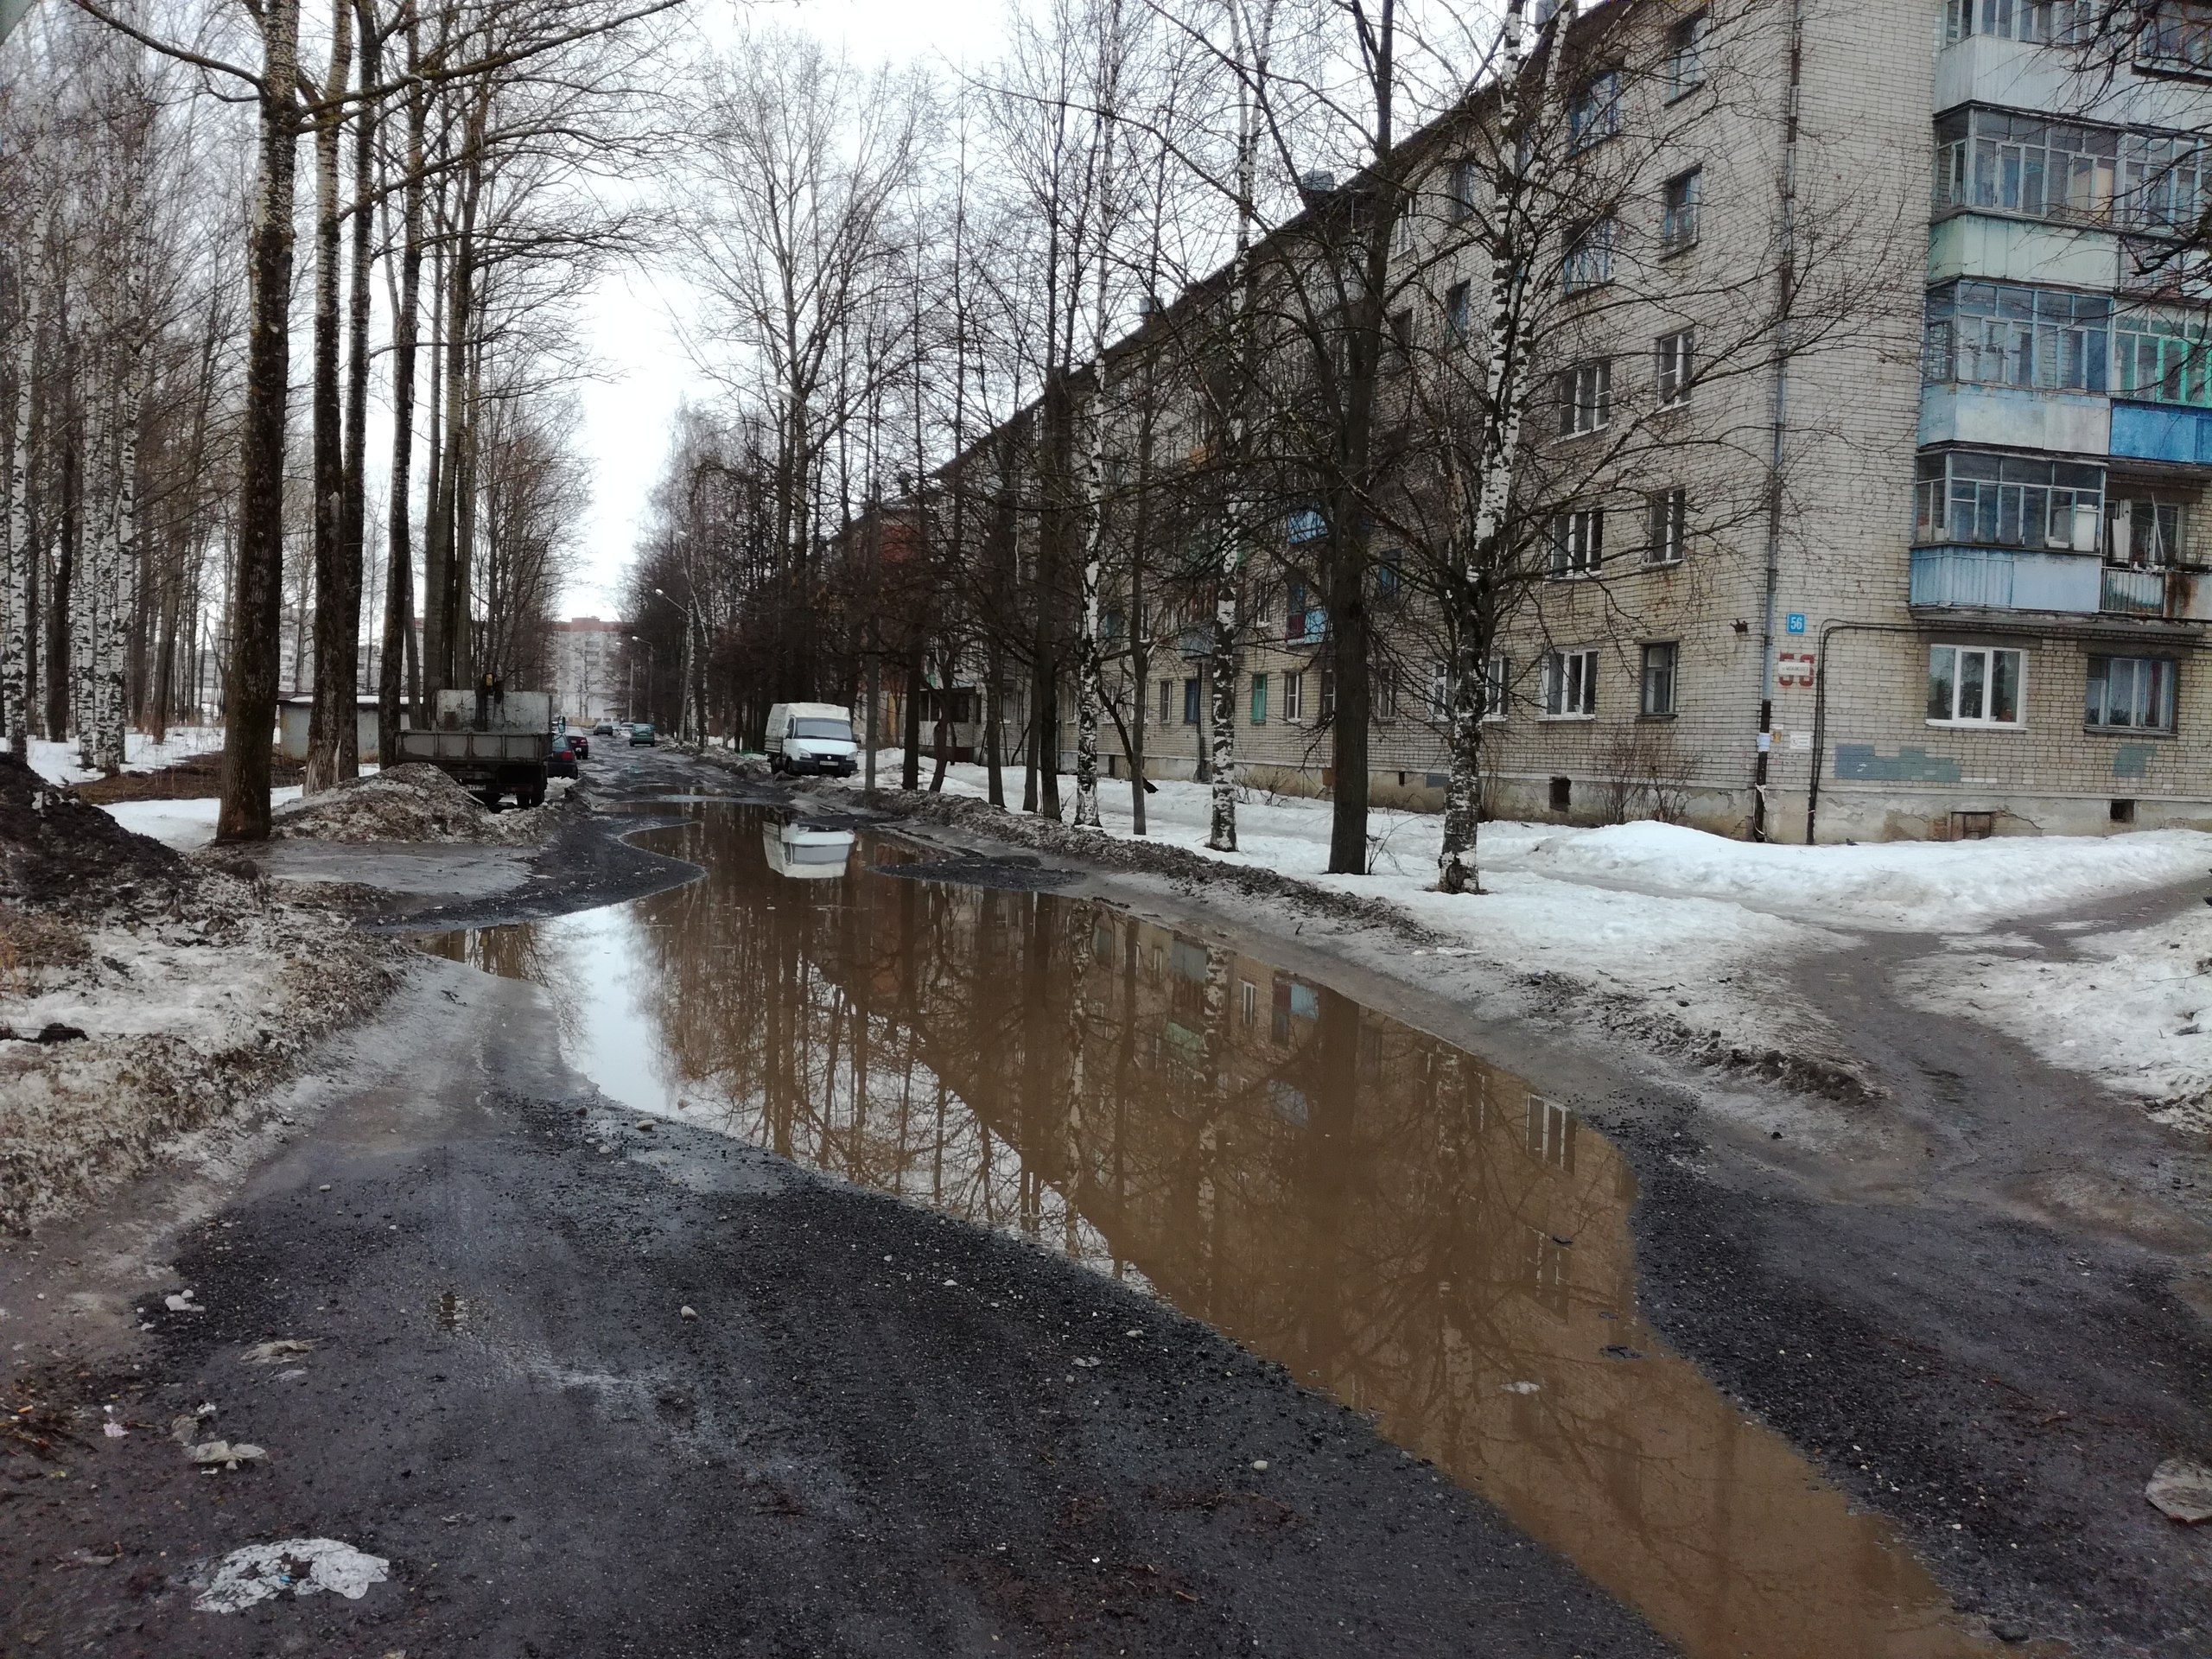 Поговори грязно. Улица весной в России.